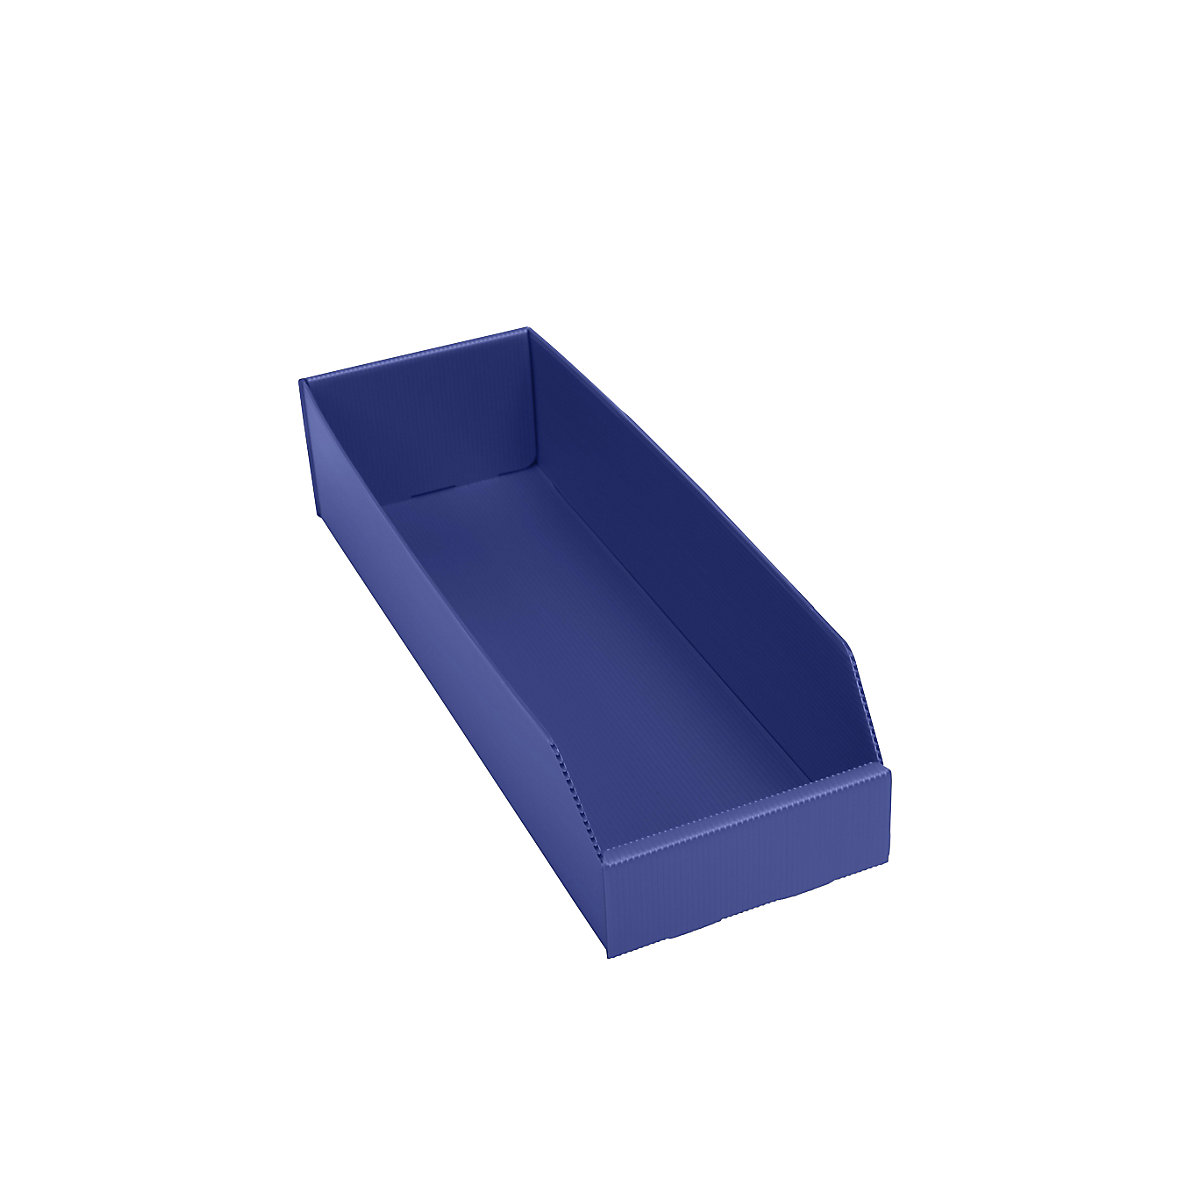 Cassettina in plastica per scaffali, pieghevole, lungh. x largh. x alt. 450 x 150 x 100 mm, blu, conf. da 25 pz.-5